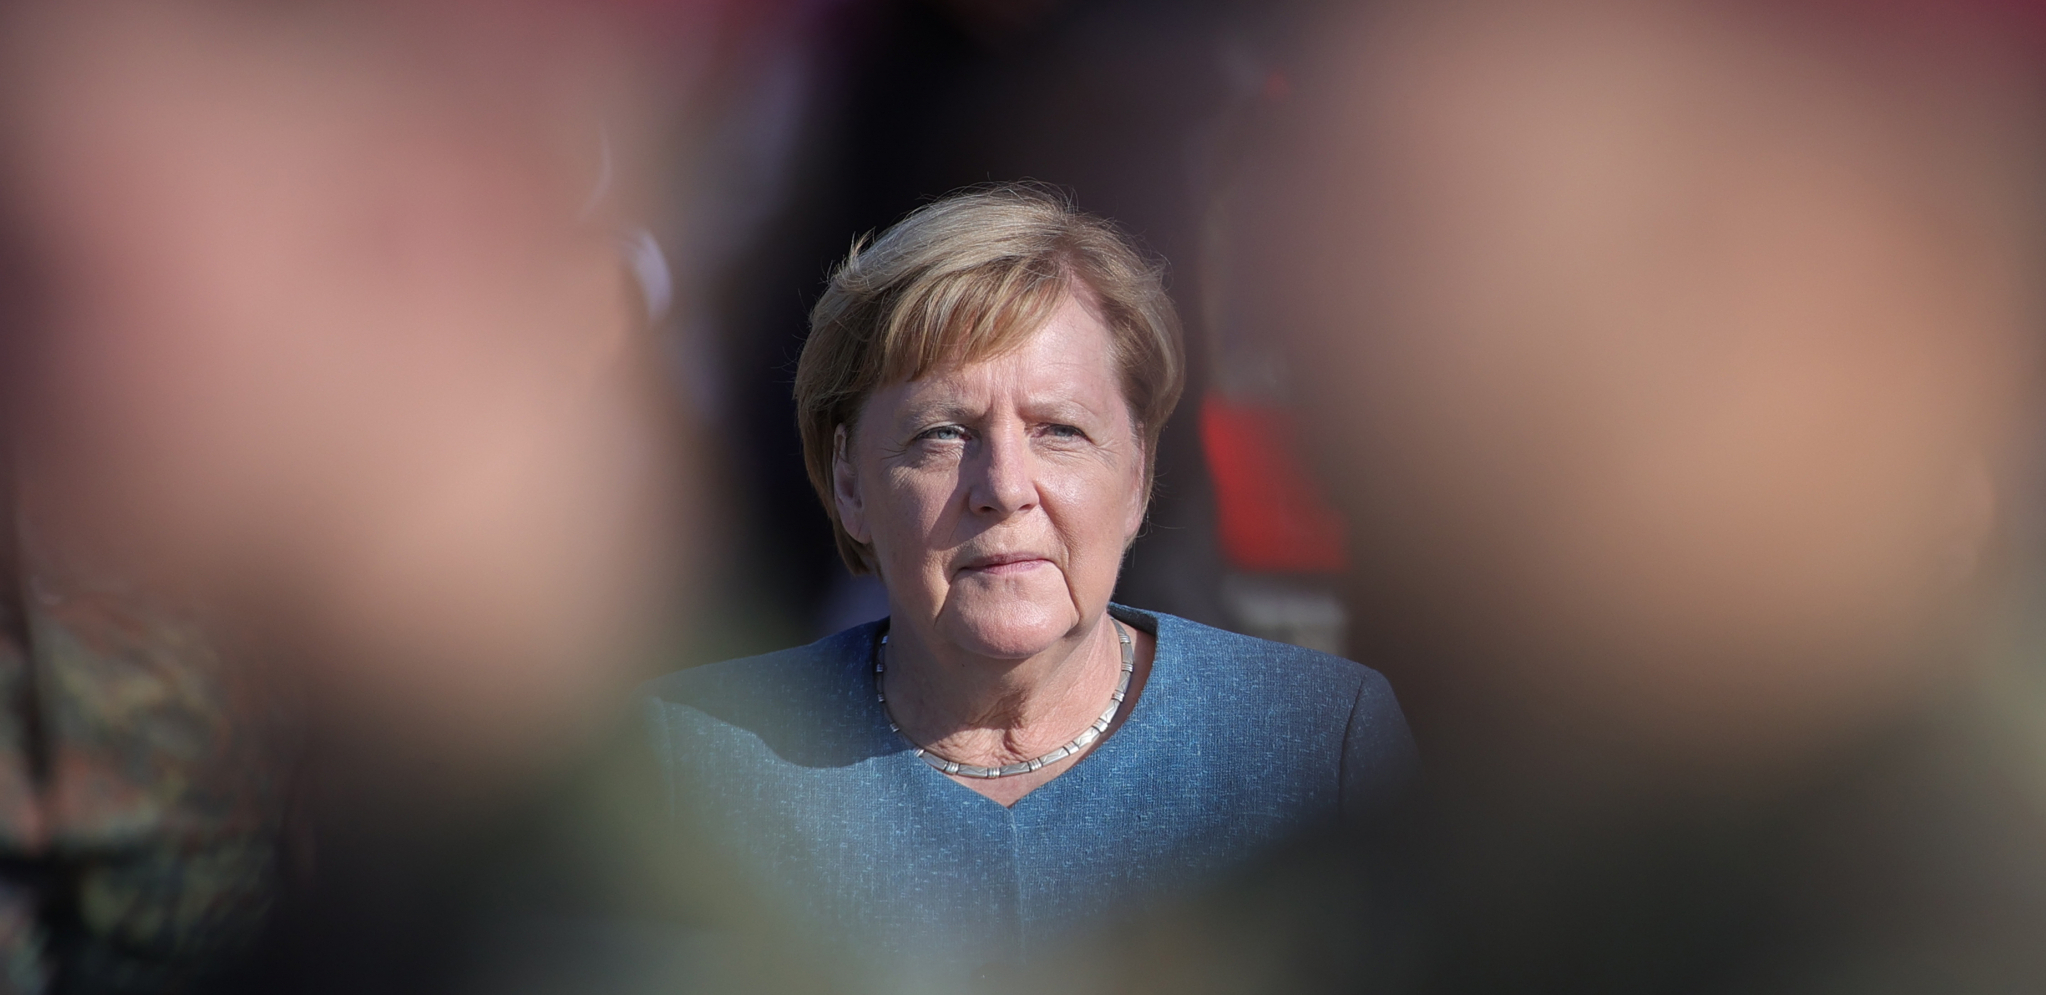 KO JE OLAF ŠOLC Spaja prste kao Angela Merkel, a jedan SKANDAL bacio je senku na njegovu karijeru!